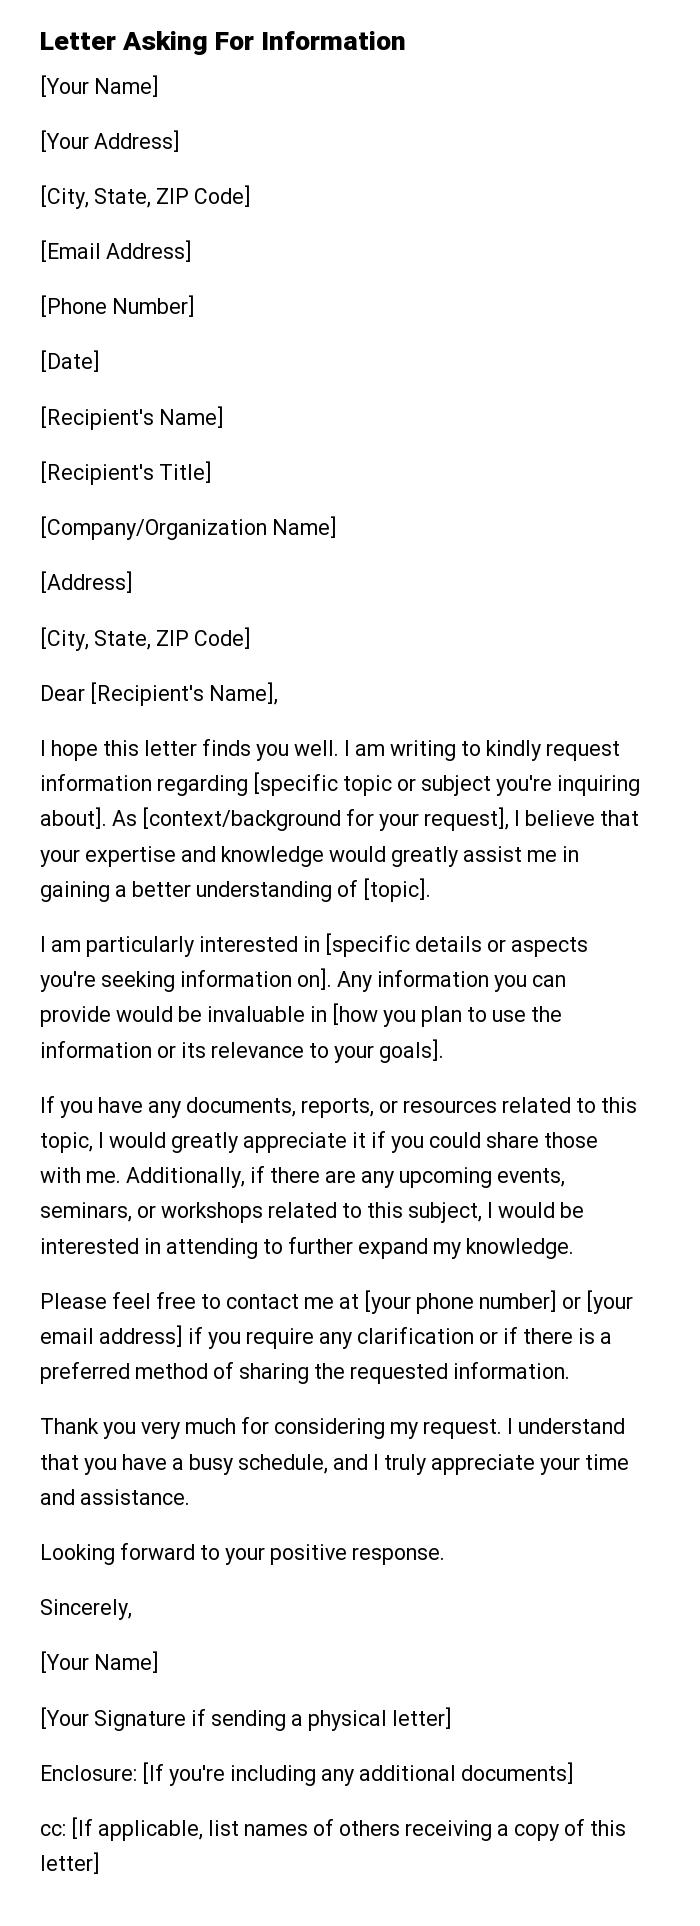 Letter Asking For Information